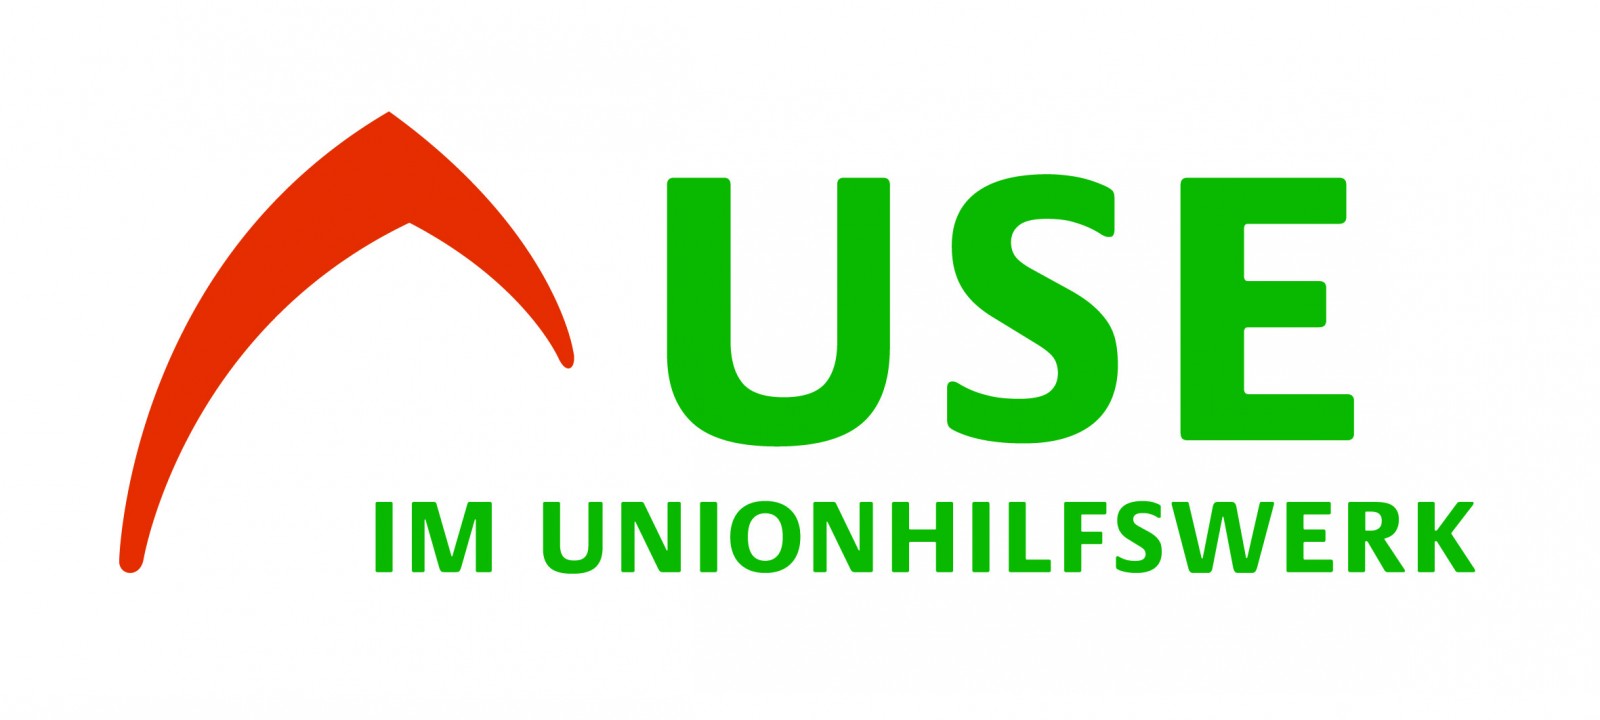 Logo USE